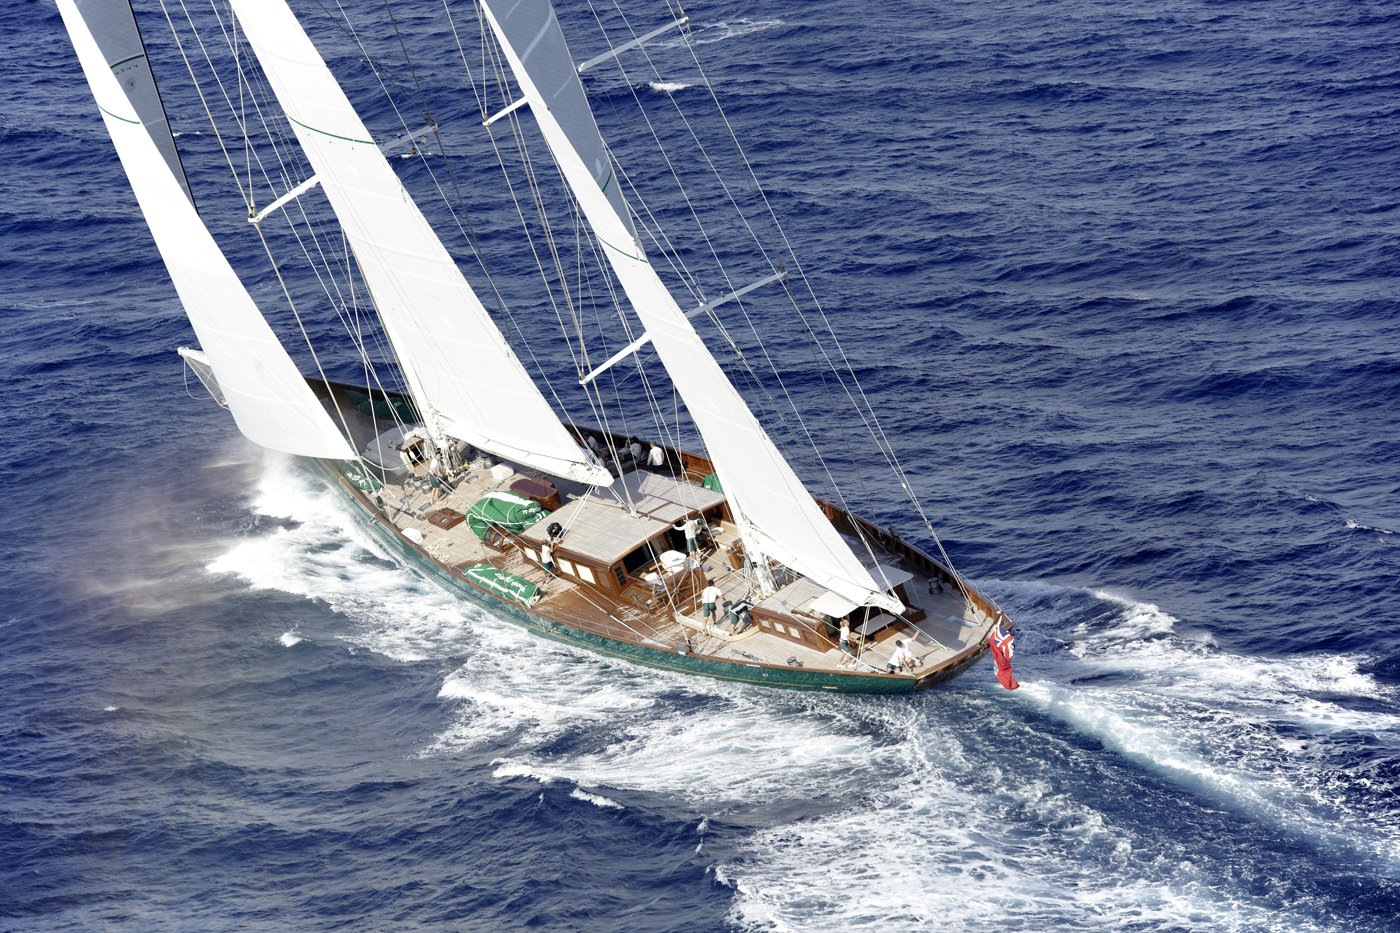 hetairos sailing yacht